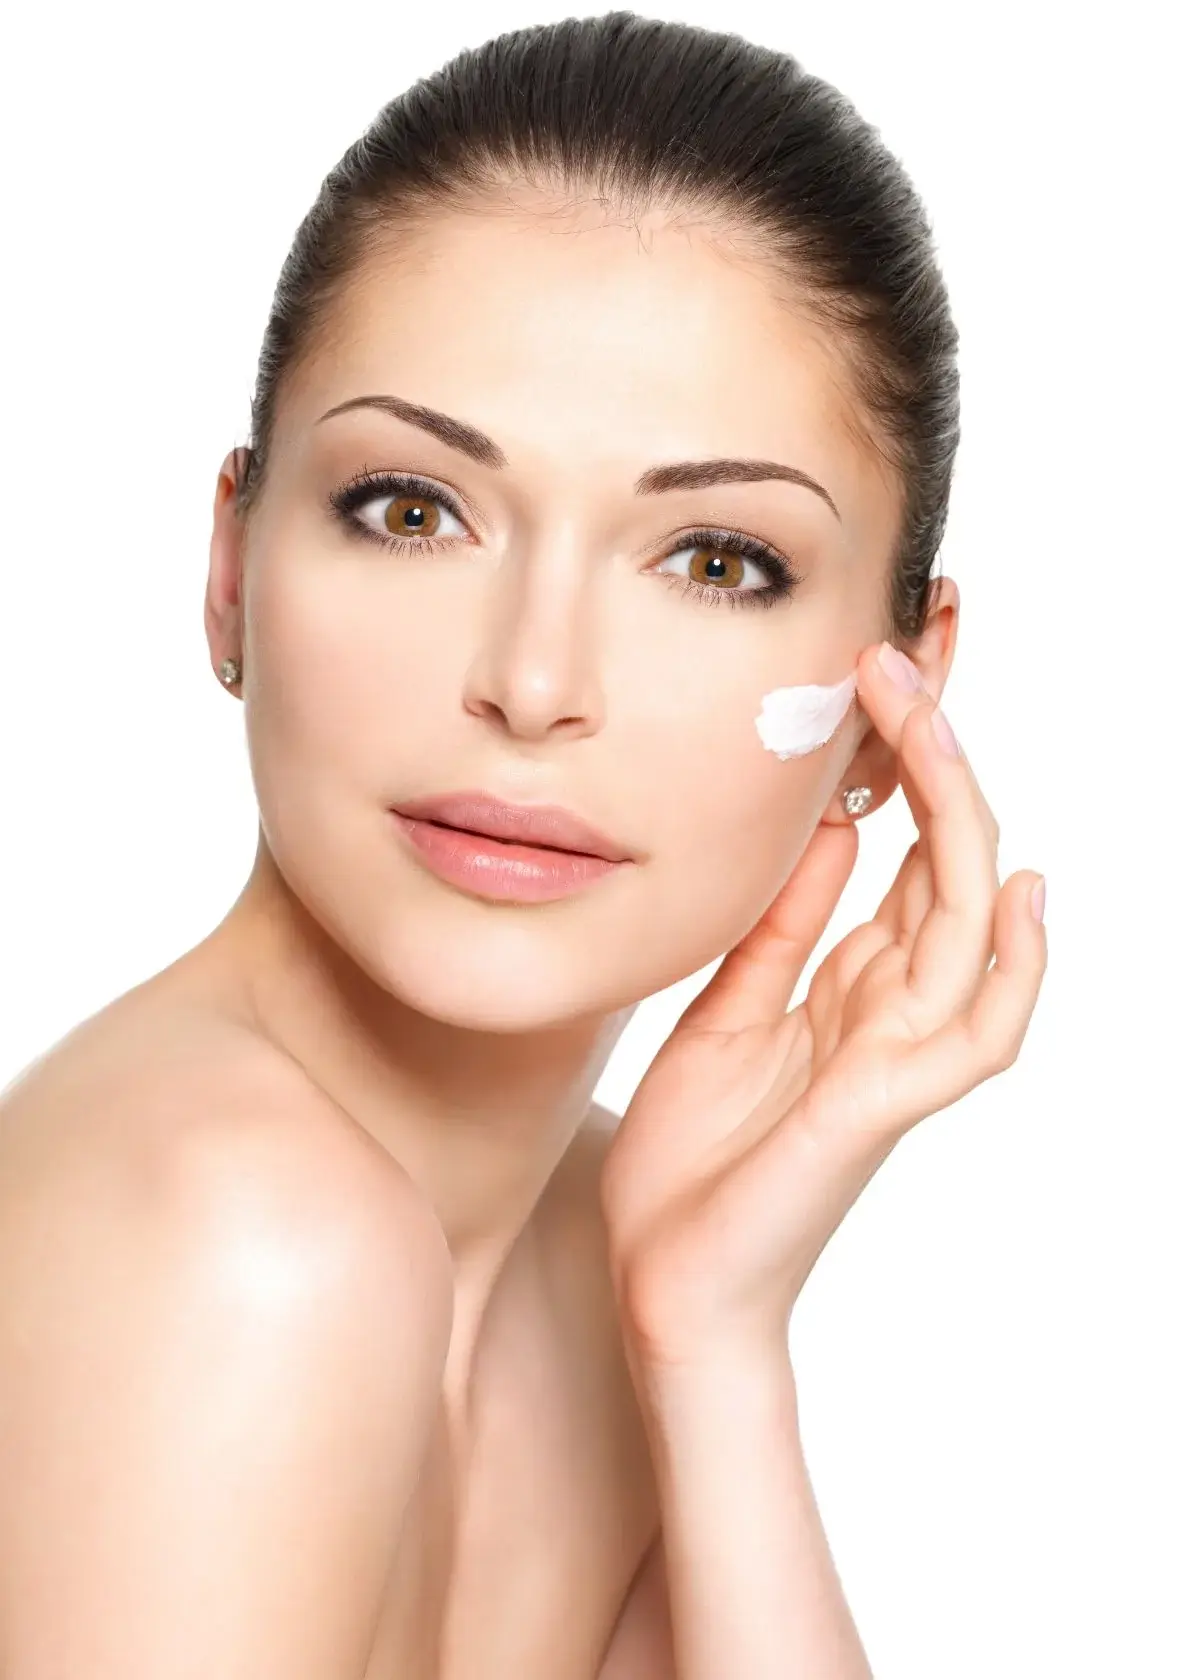 How does collagen eye cream work?